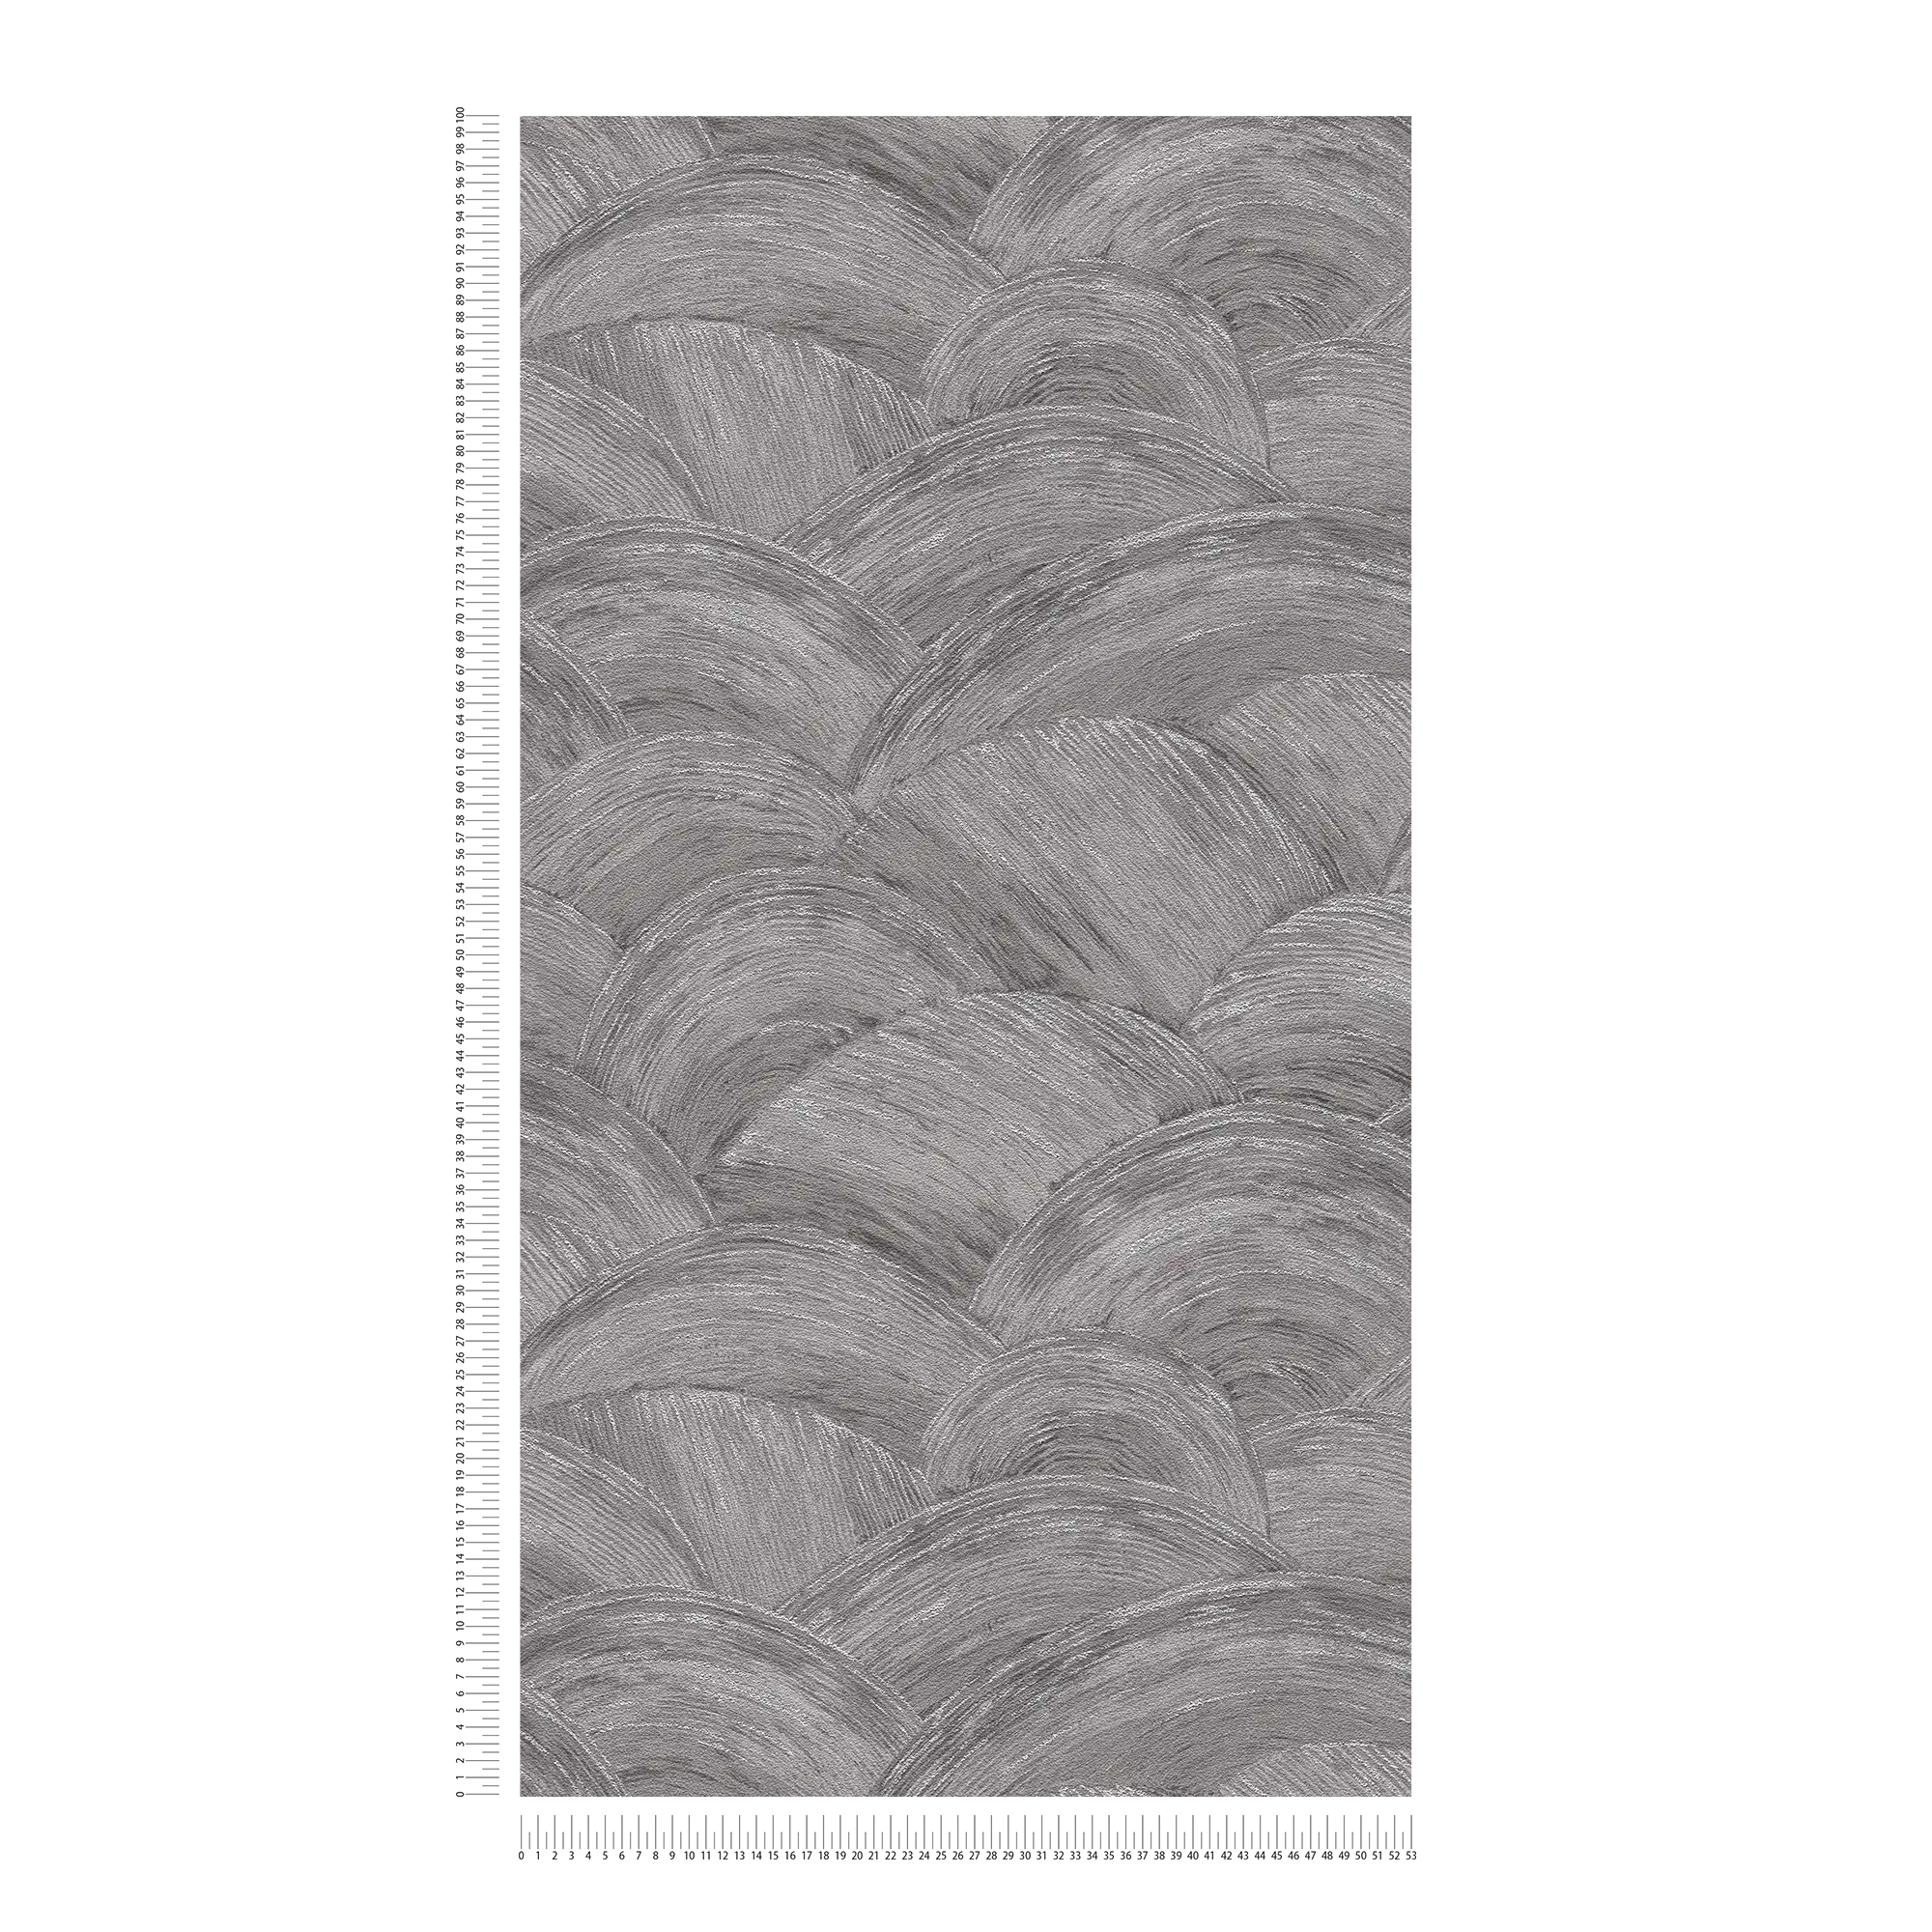             Papel pintado no tejido con textura ondulada y efecto brillante - gris, plata
        